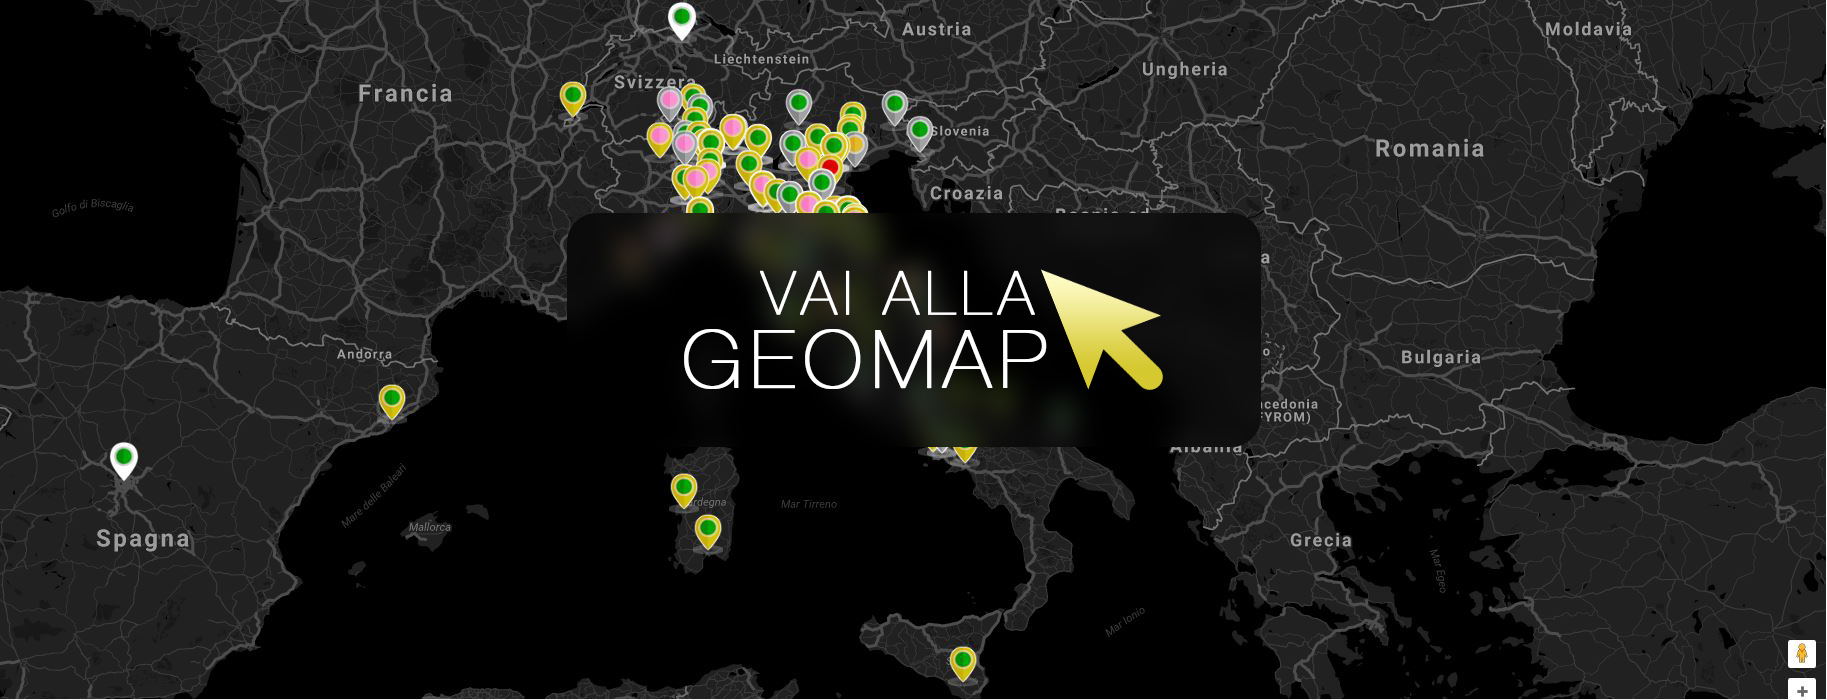 Guarda gli annunci a Marina Di Massa nella mappa intervattiva